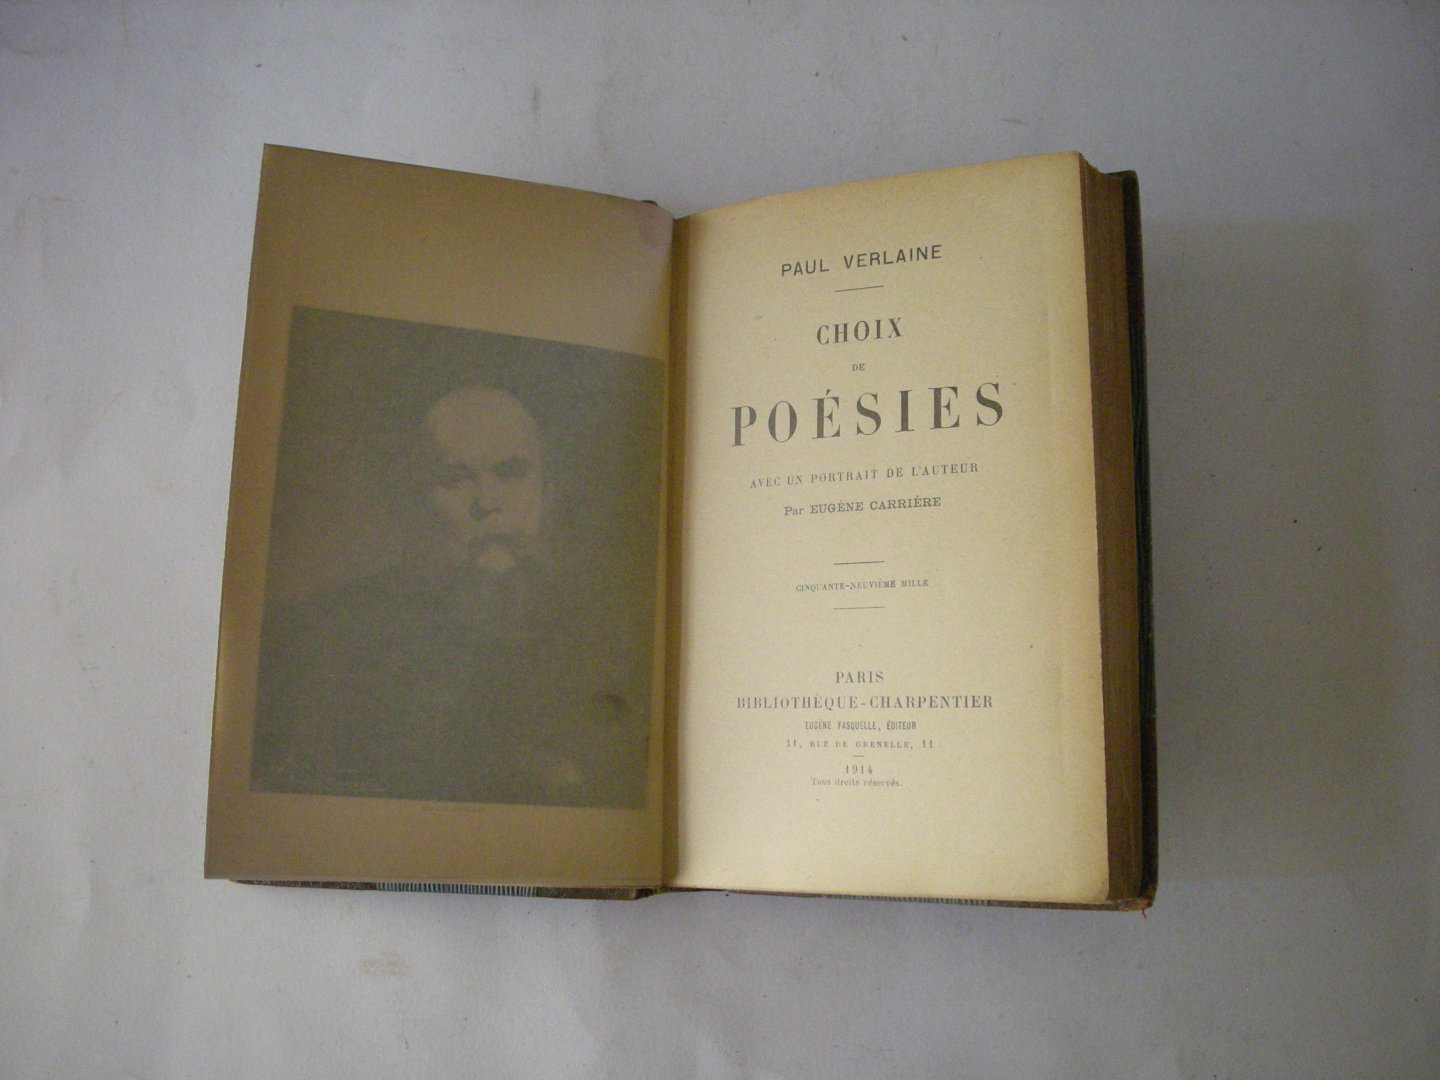 Verlaine, Paul - Choix de poesies, avec un portrait de l'auteur par Eugene Carriere